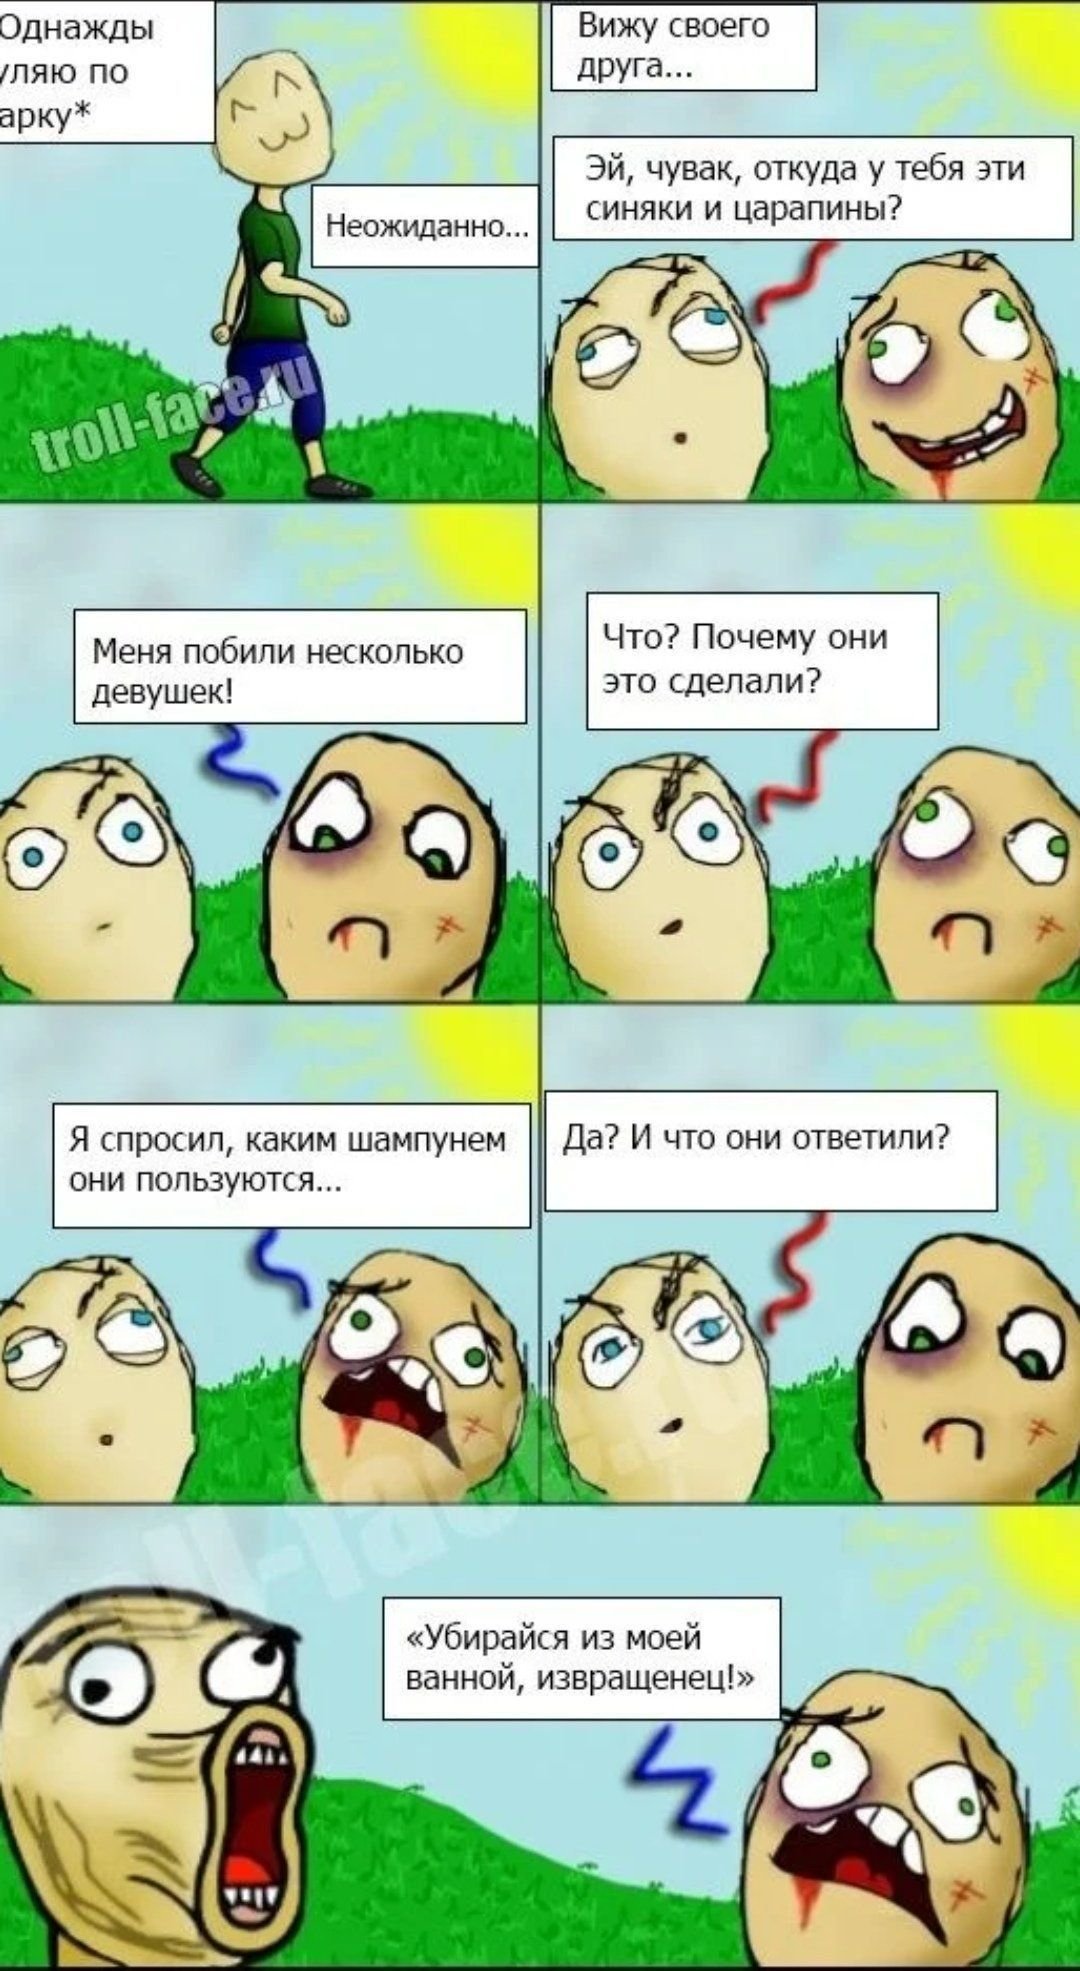 Ржачные мемы на русском. Смешные мемы. Мемы комиксы. Мемы шутки. Смешные комиксы.